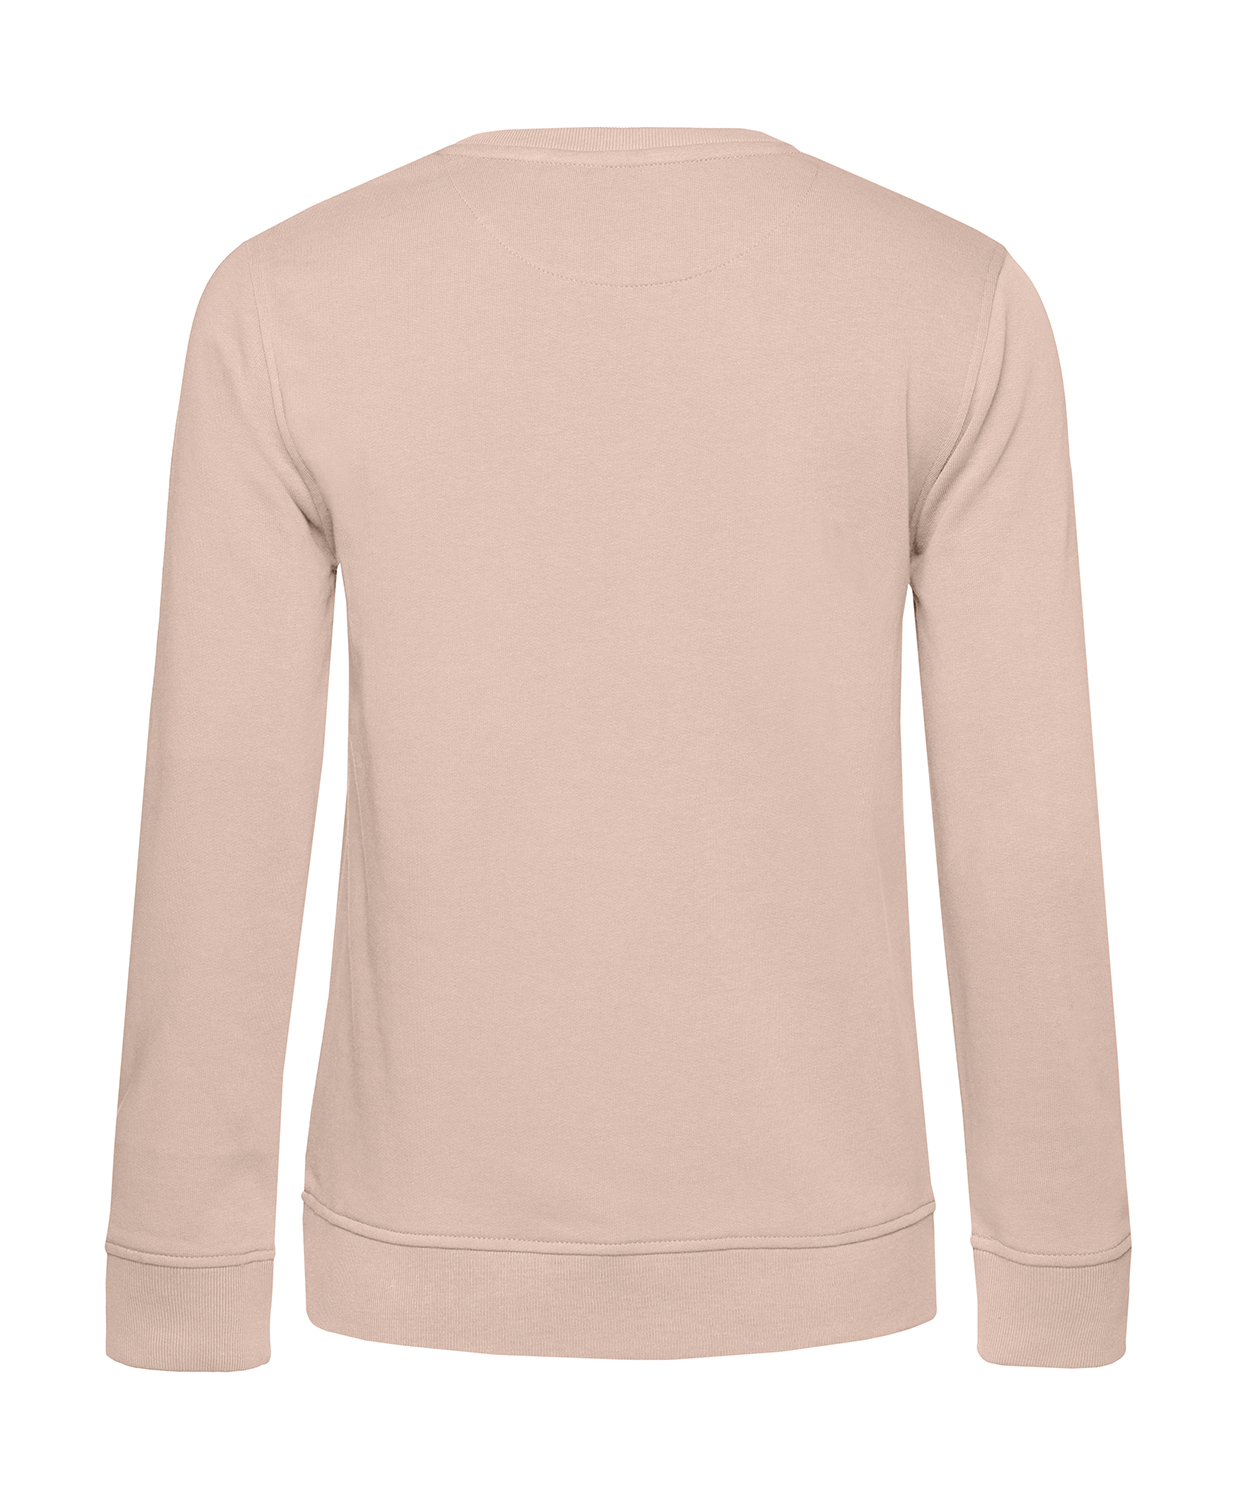 Nachhaltiges Sweatshirt Damen 2Takt - Wenn Du keine besitzt SR2